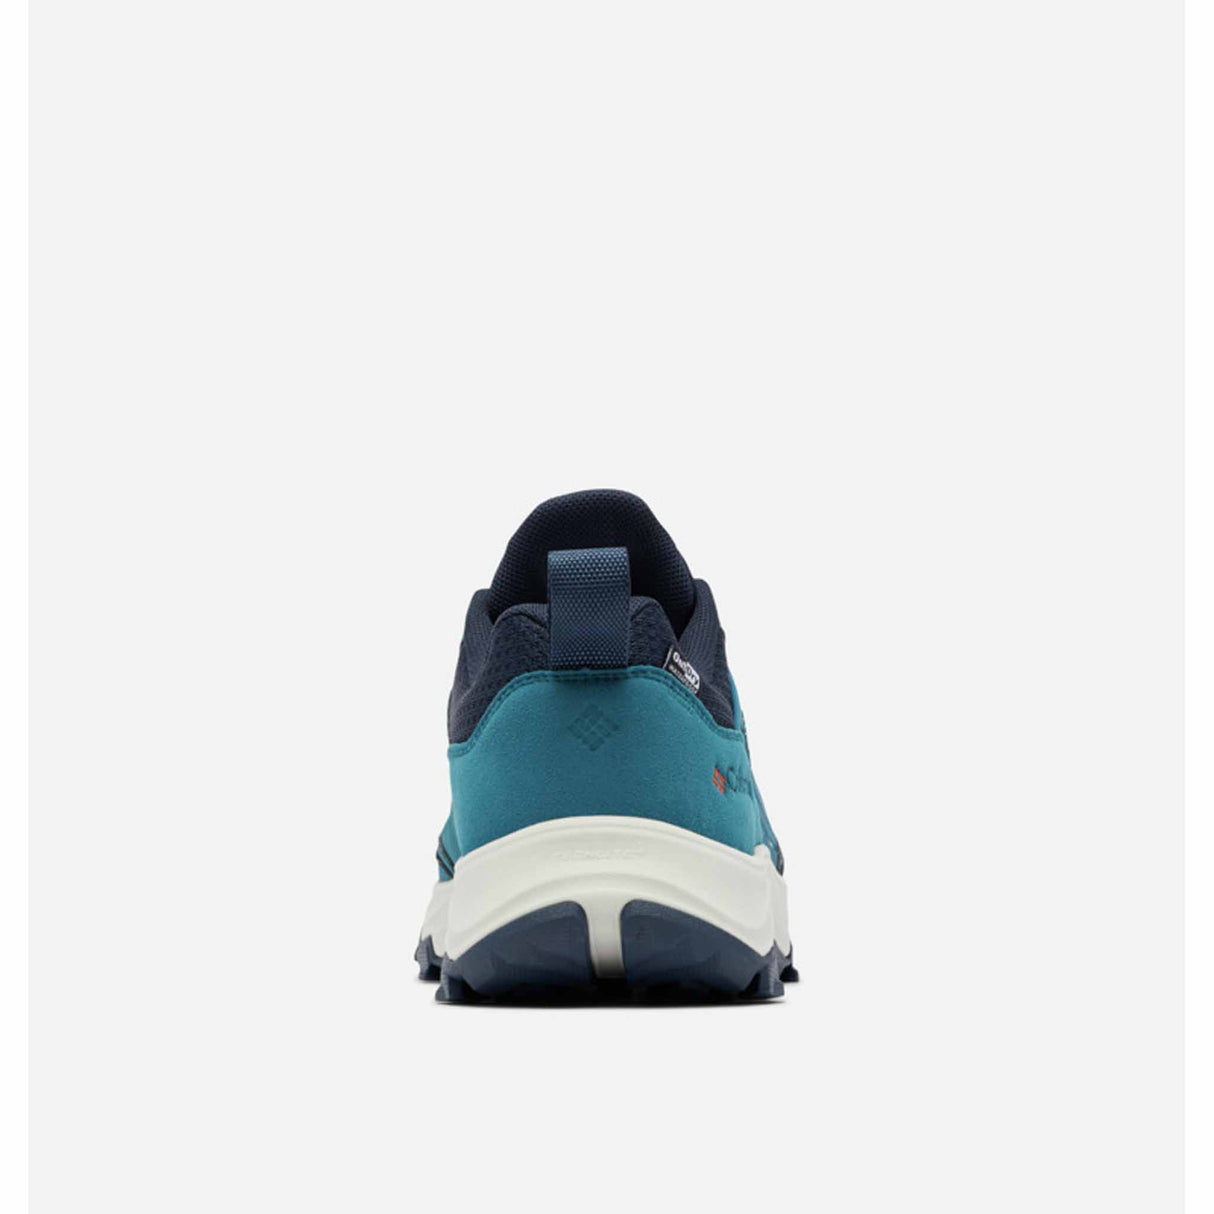 Columbia Hatana Max Outdry chaussures de randonnée imperméables pour homme - Deep Water / Spark